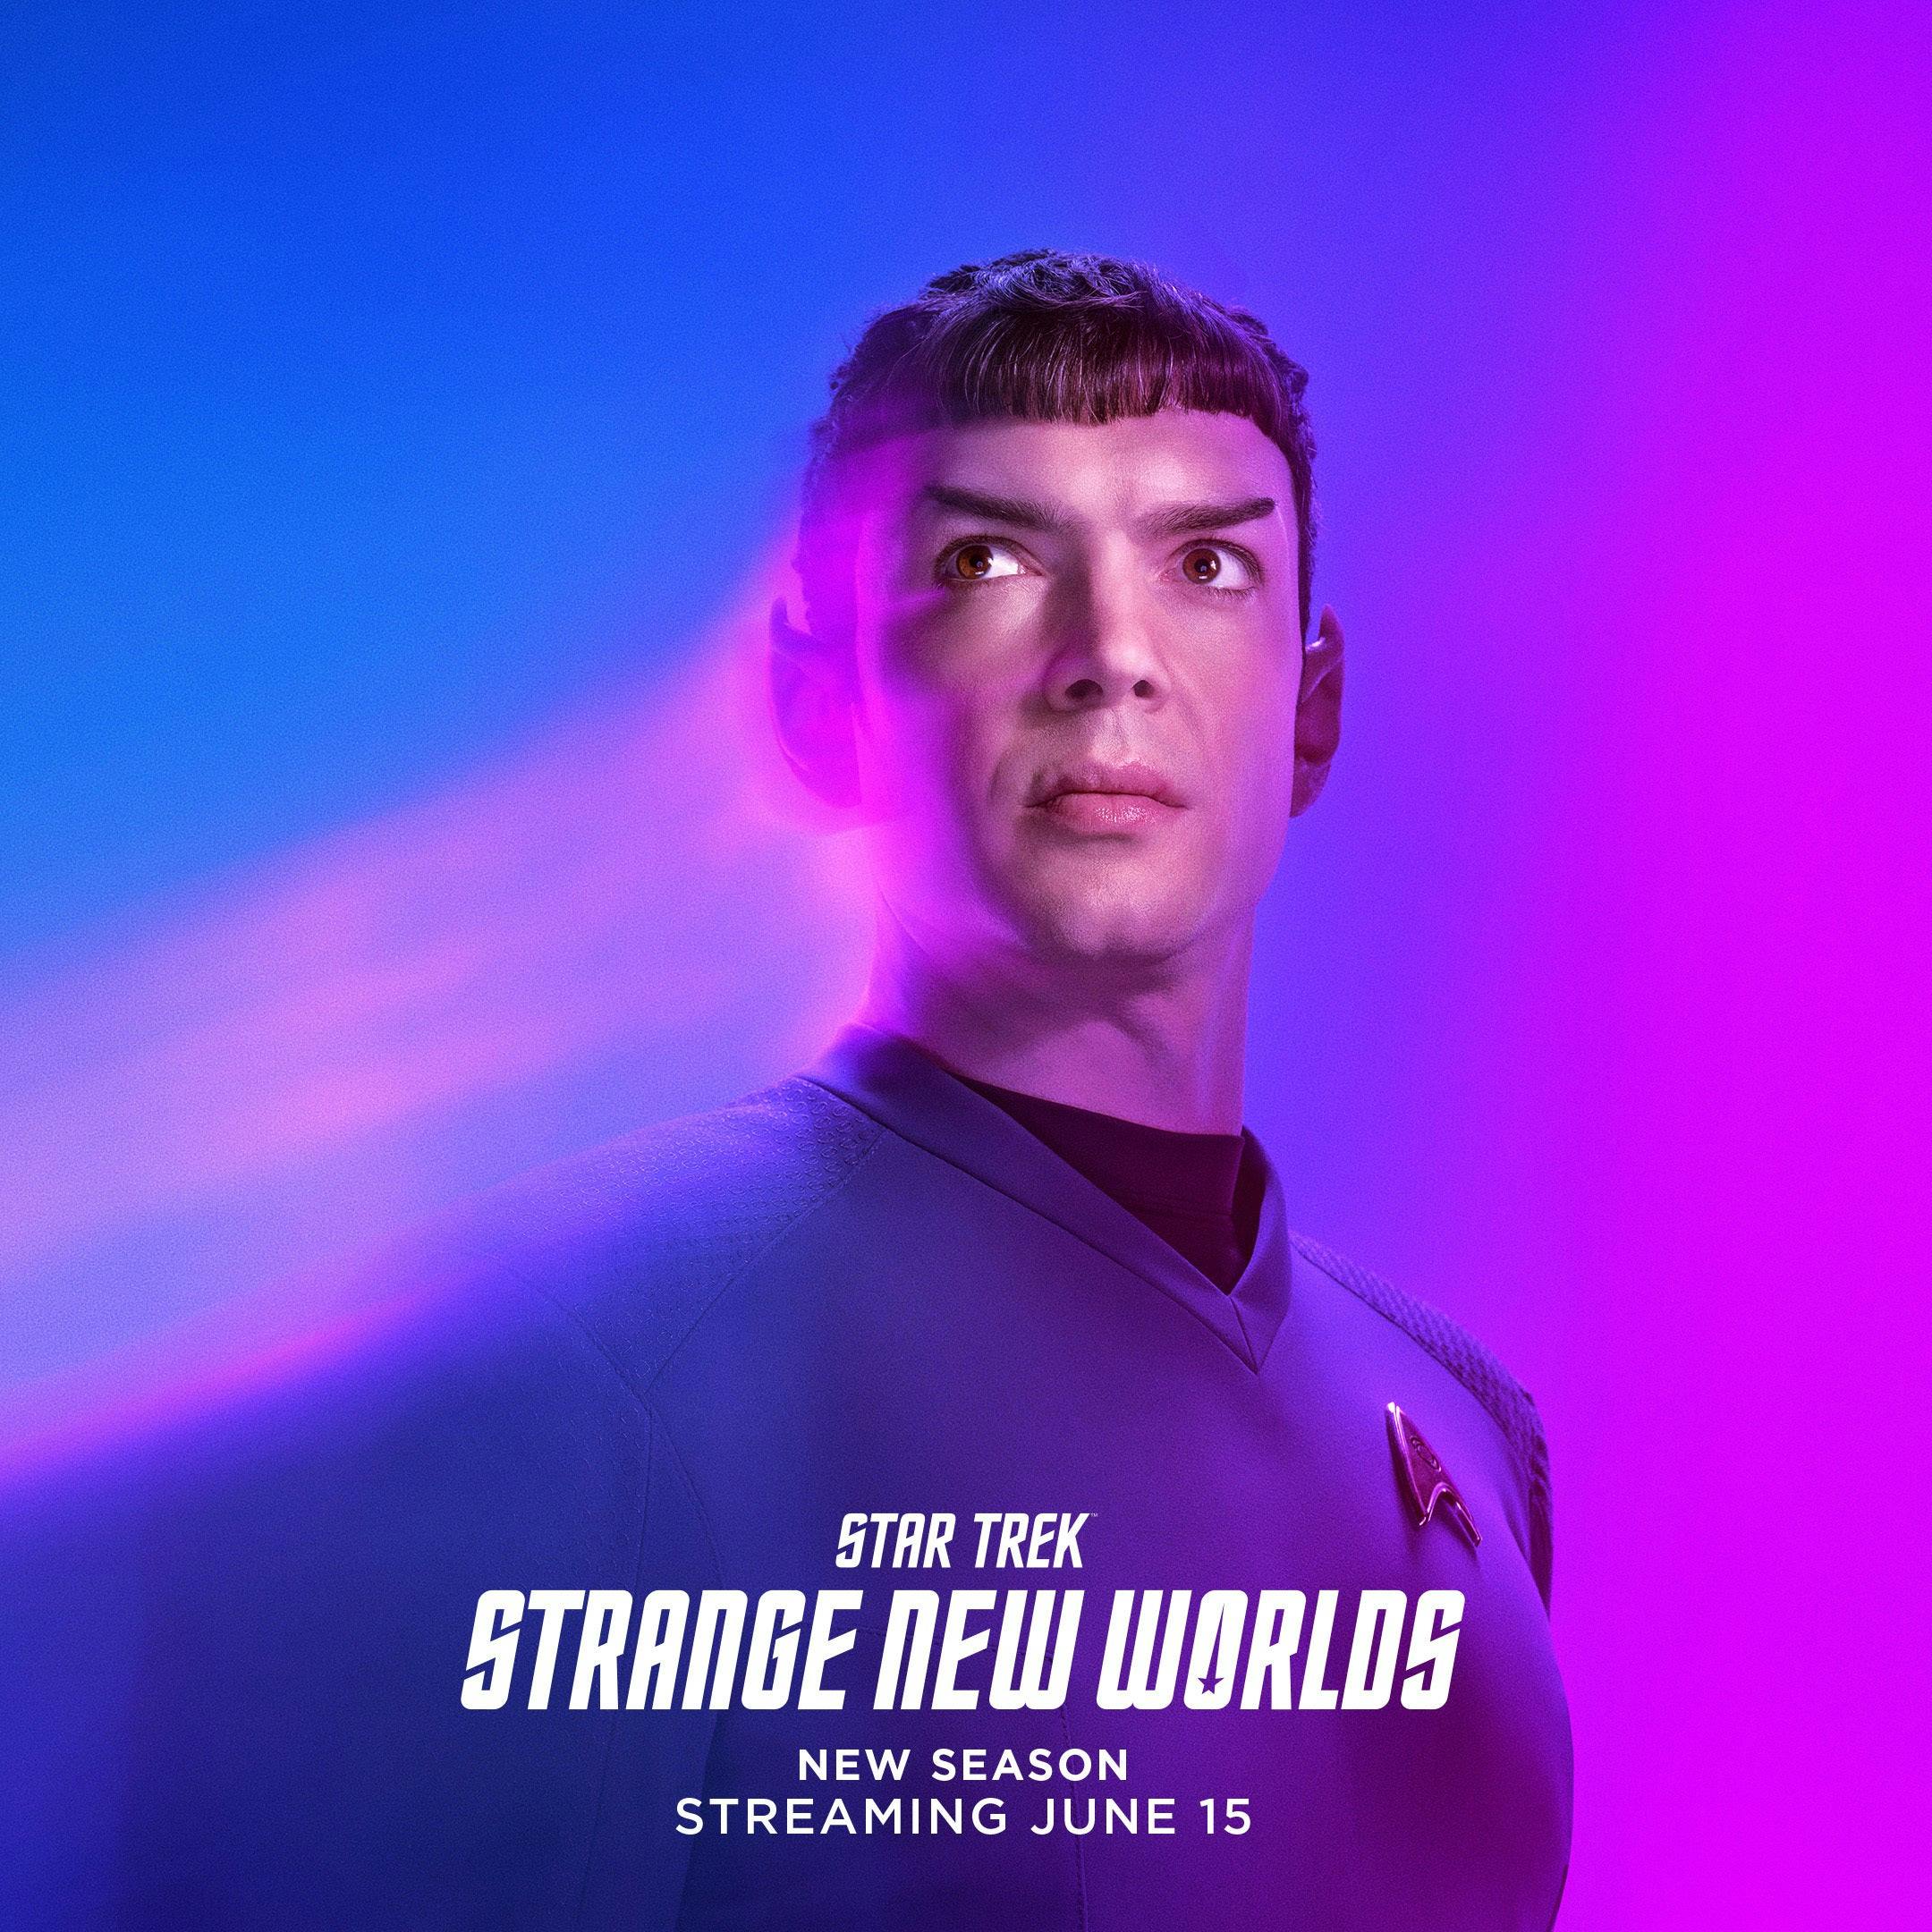 Star Trek: Strange New Worlds Season 2 Character Art | Ethan Peck as Science Officer Spock